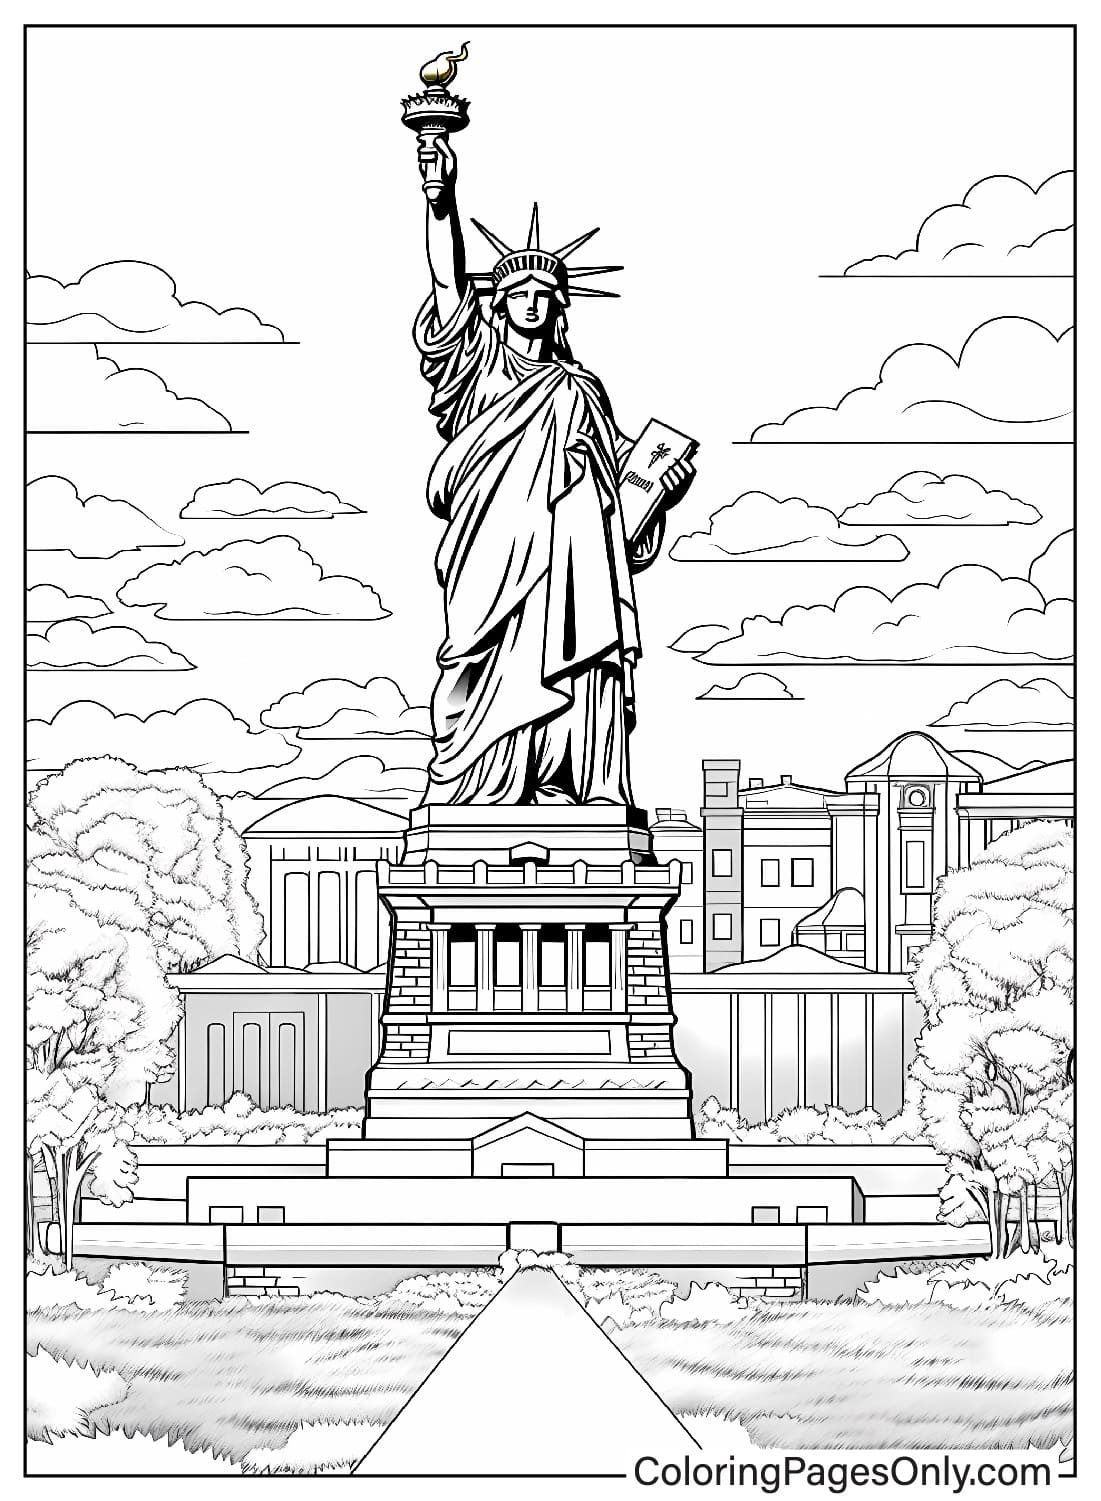 Immagini della statua della libertà da colorare